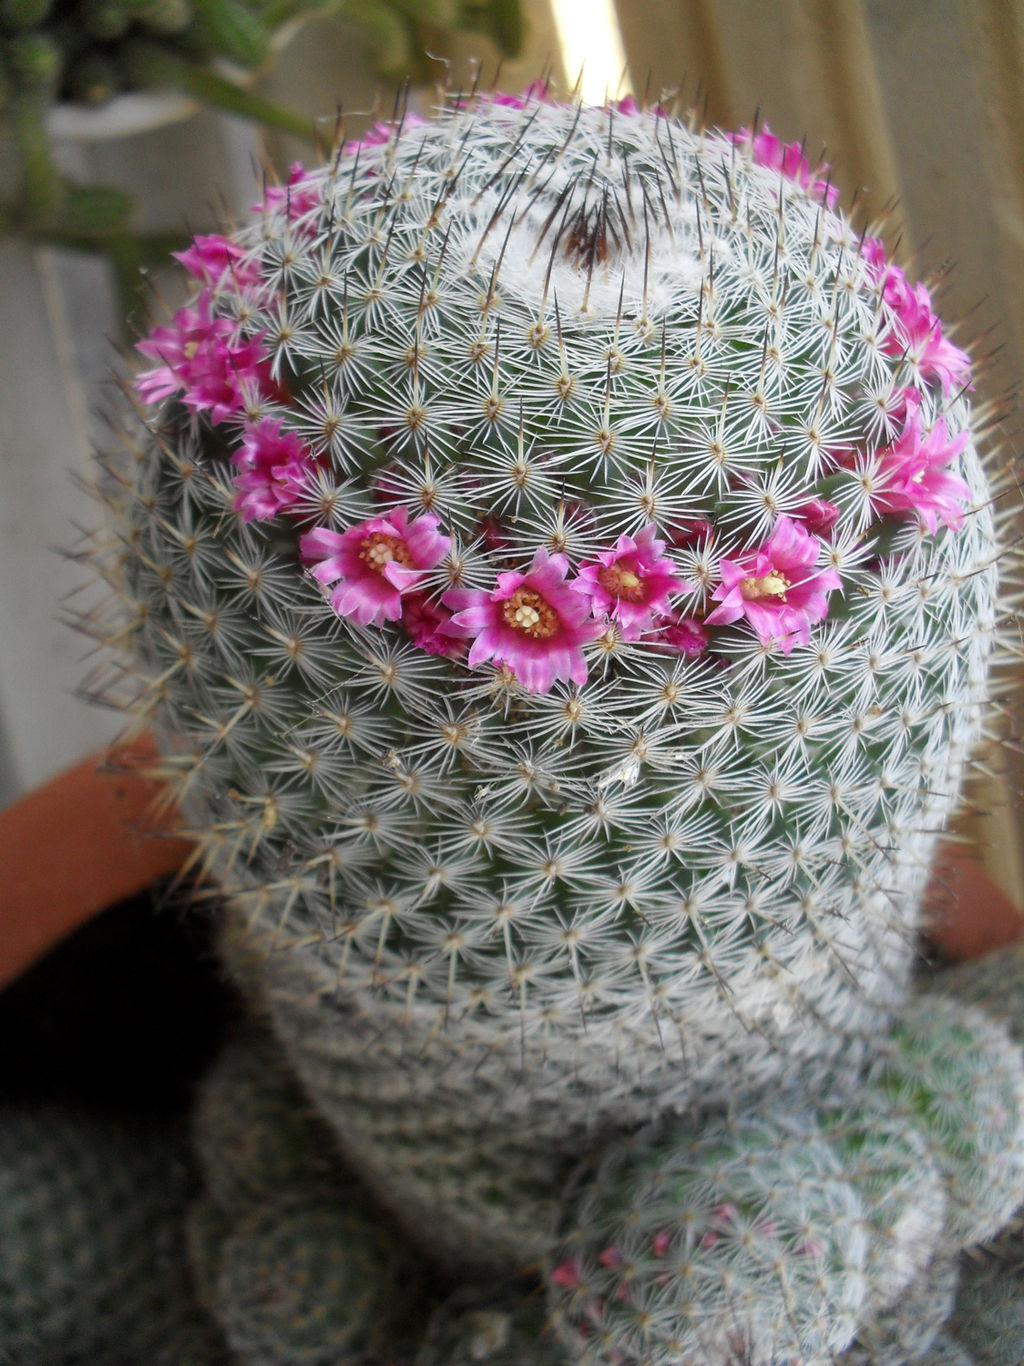 Flowering Cactus stock